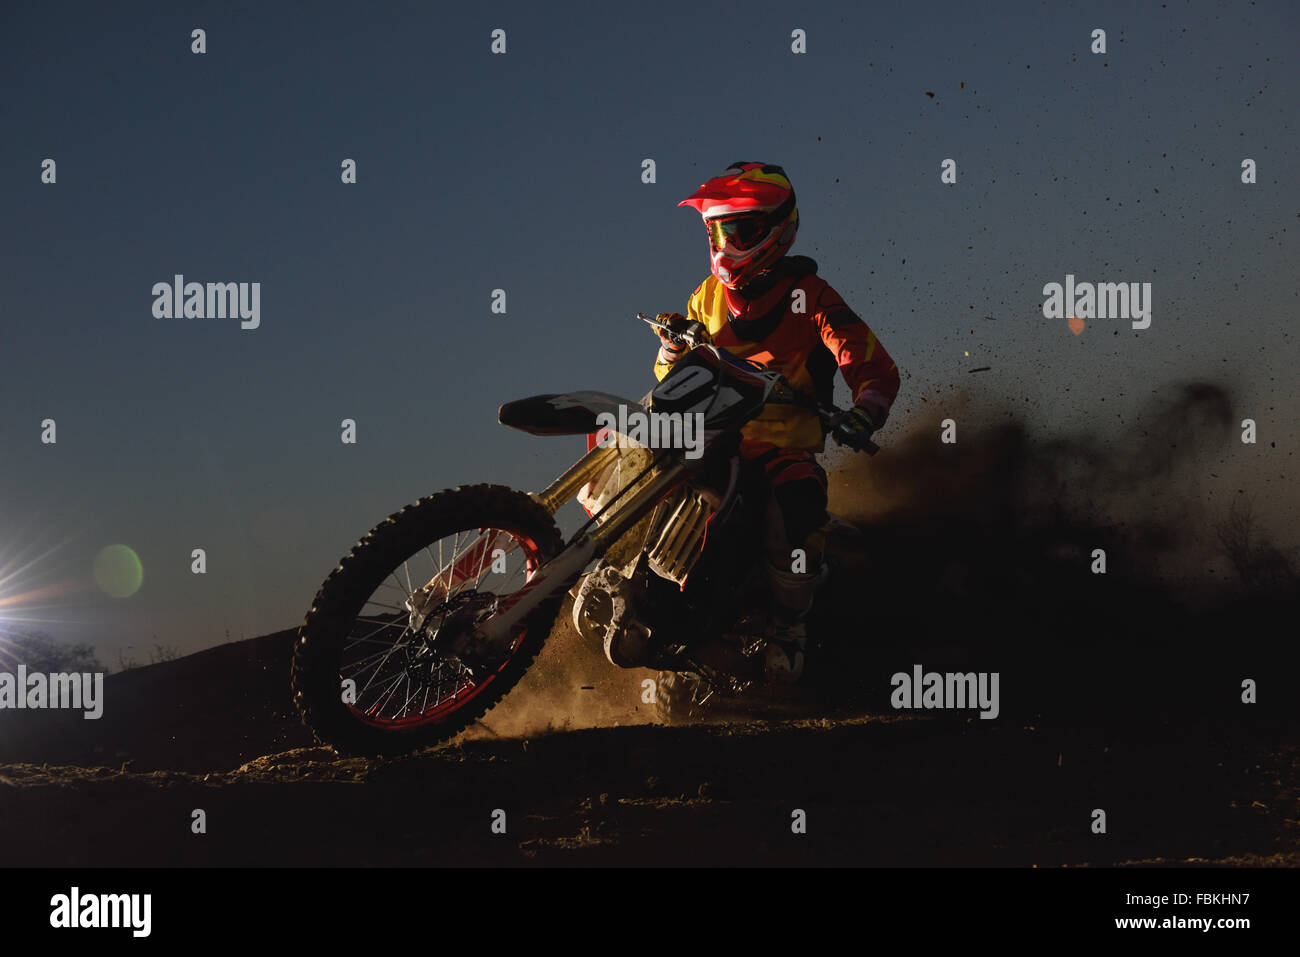 Biker Motocross sur un chemin de terre Banque D'Images